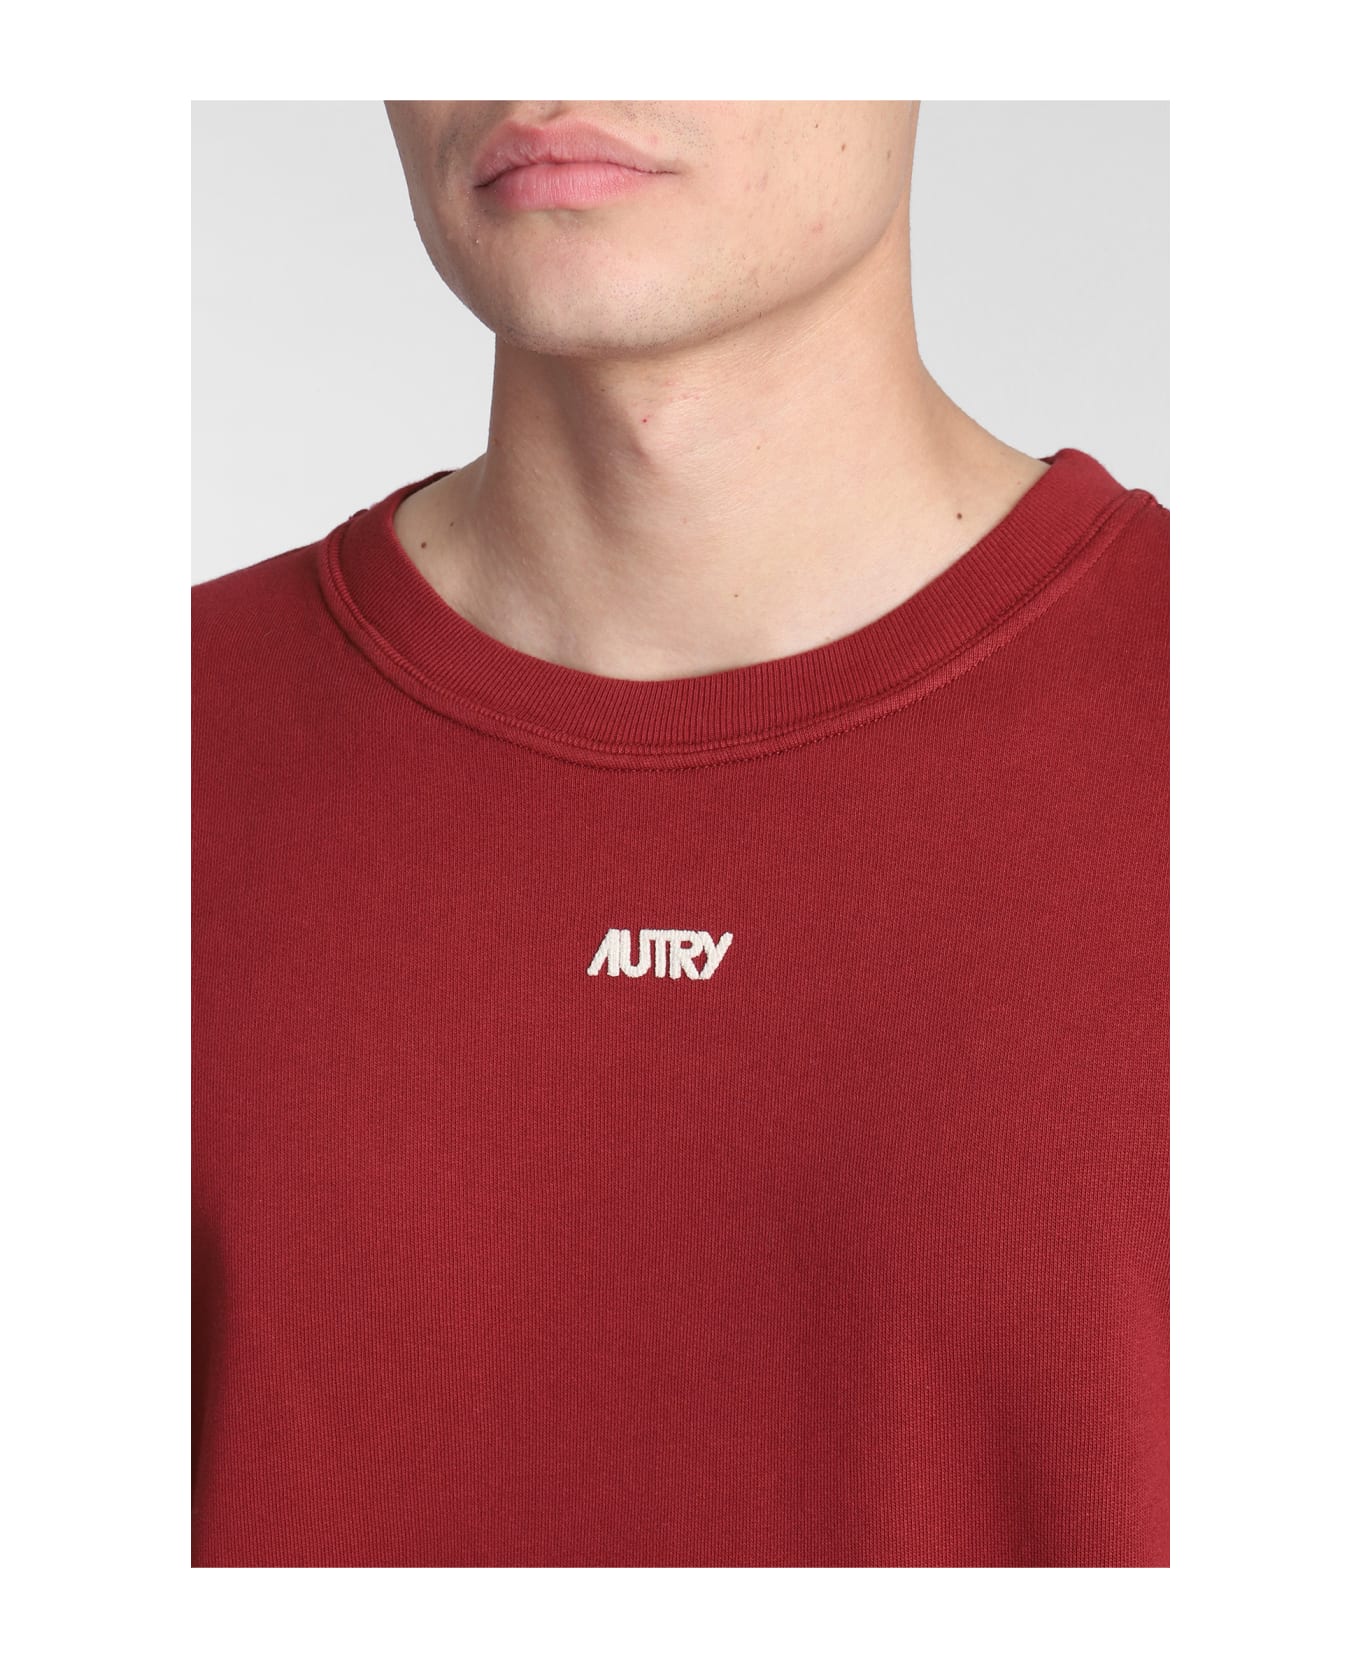 Autry Crewneck Sweatshirt - Red